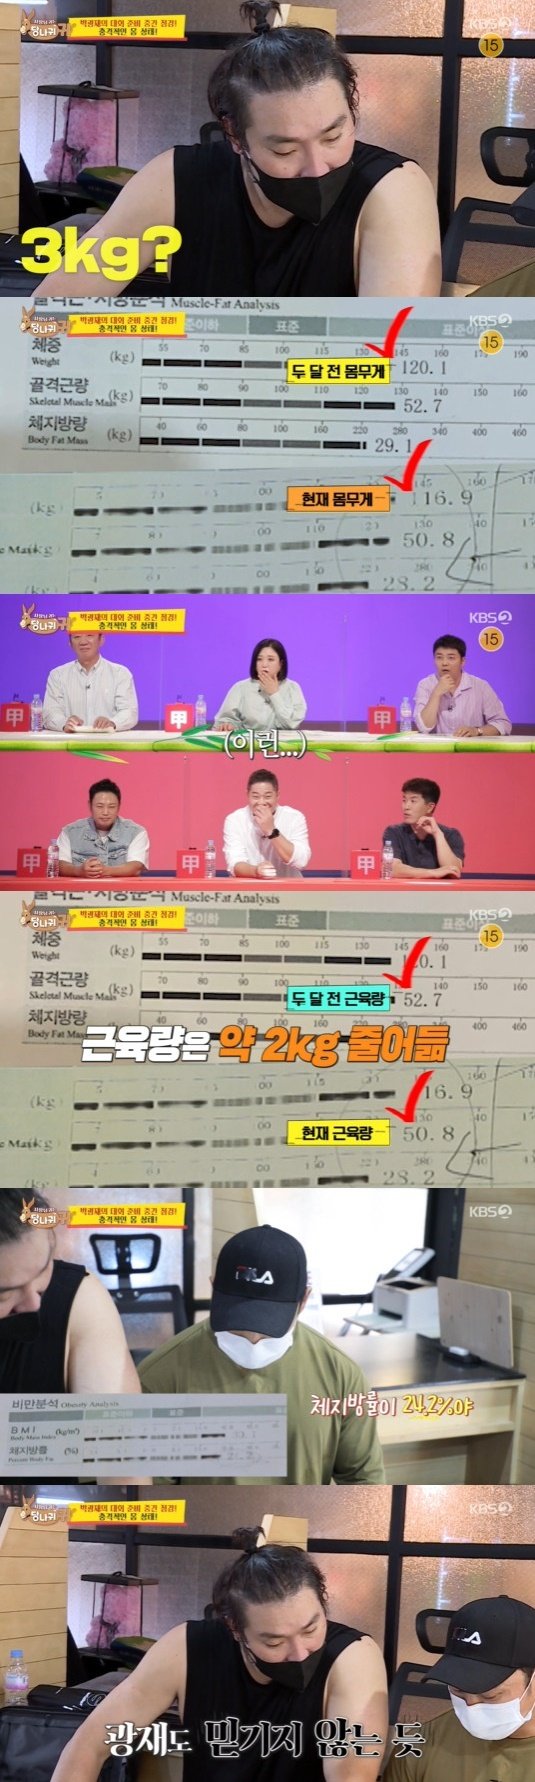 KBS 2TV ‘사장님 귀는 당나귀 귀’ 방송 화면 캡처 © 뉴스1